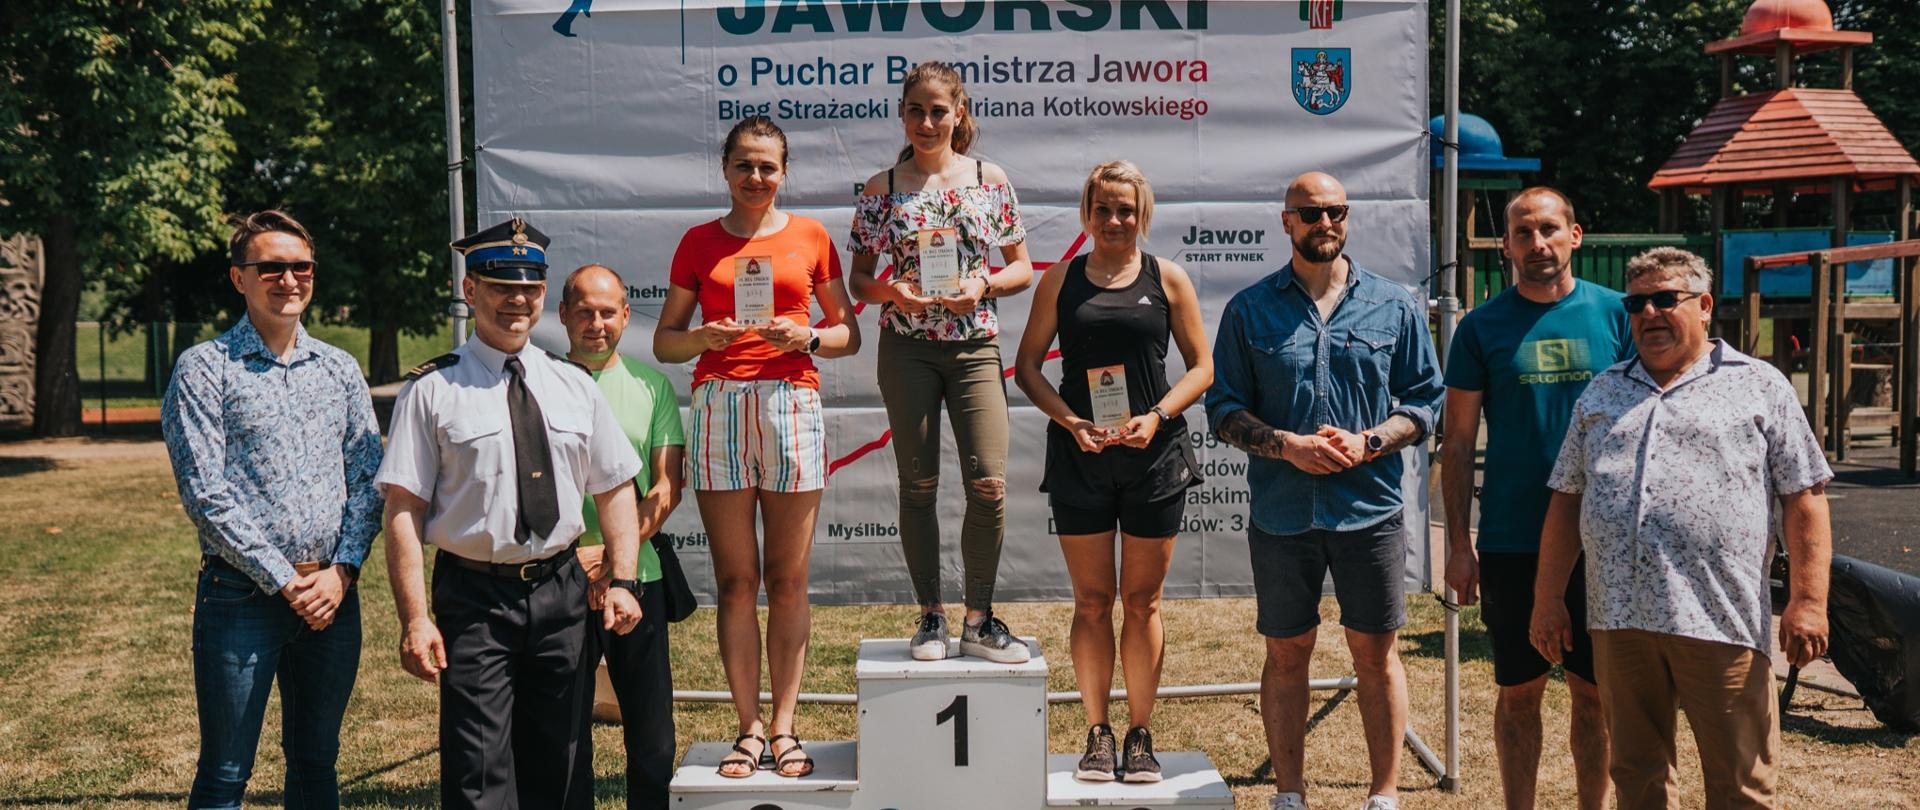 Na starcie półmaratonu stanęło 131 biegaczy, w tym funkcjonariusze Państwowej Straży Pożarnej. Pomimo wymagającej i selektywnej trasy, ciężkich warunków pogodowych zwycięzcą w kategorii kobiet została sekc. Joanna Frukacz z Komendy Miejskiej PSP Bielsko-Biała.